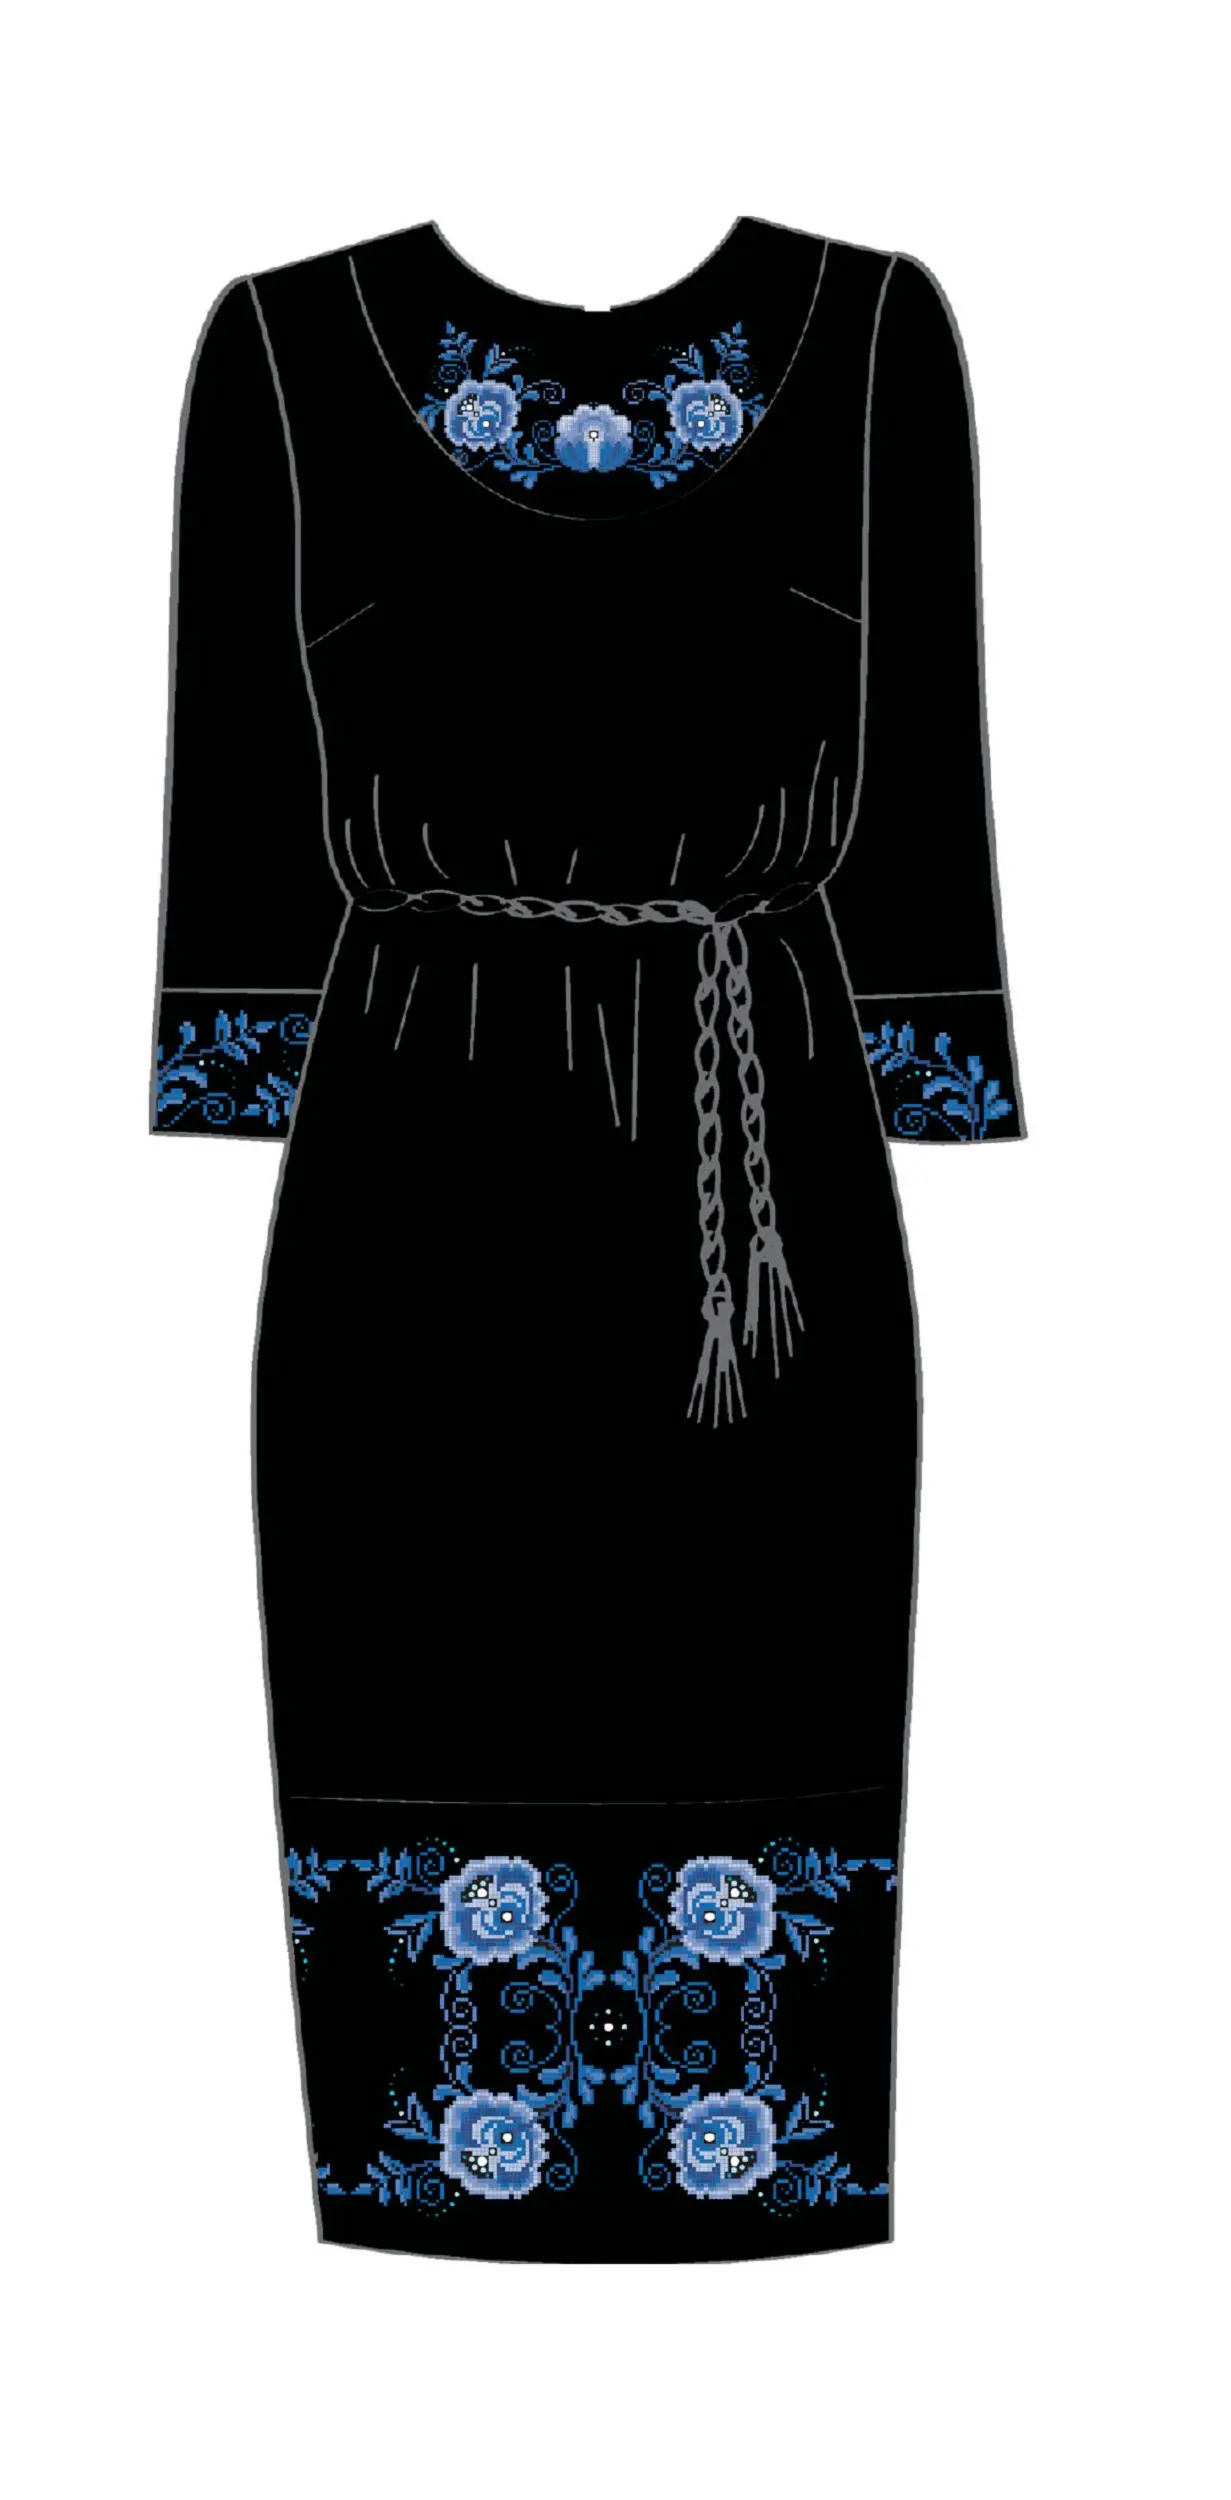 820-14/10 Плаття жіноче з поясом, чорне, розмір 54